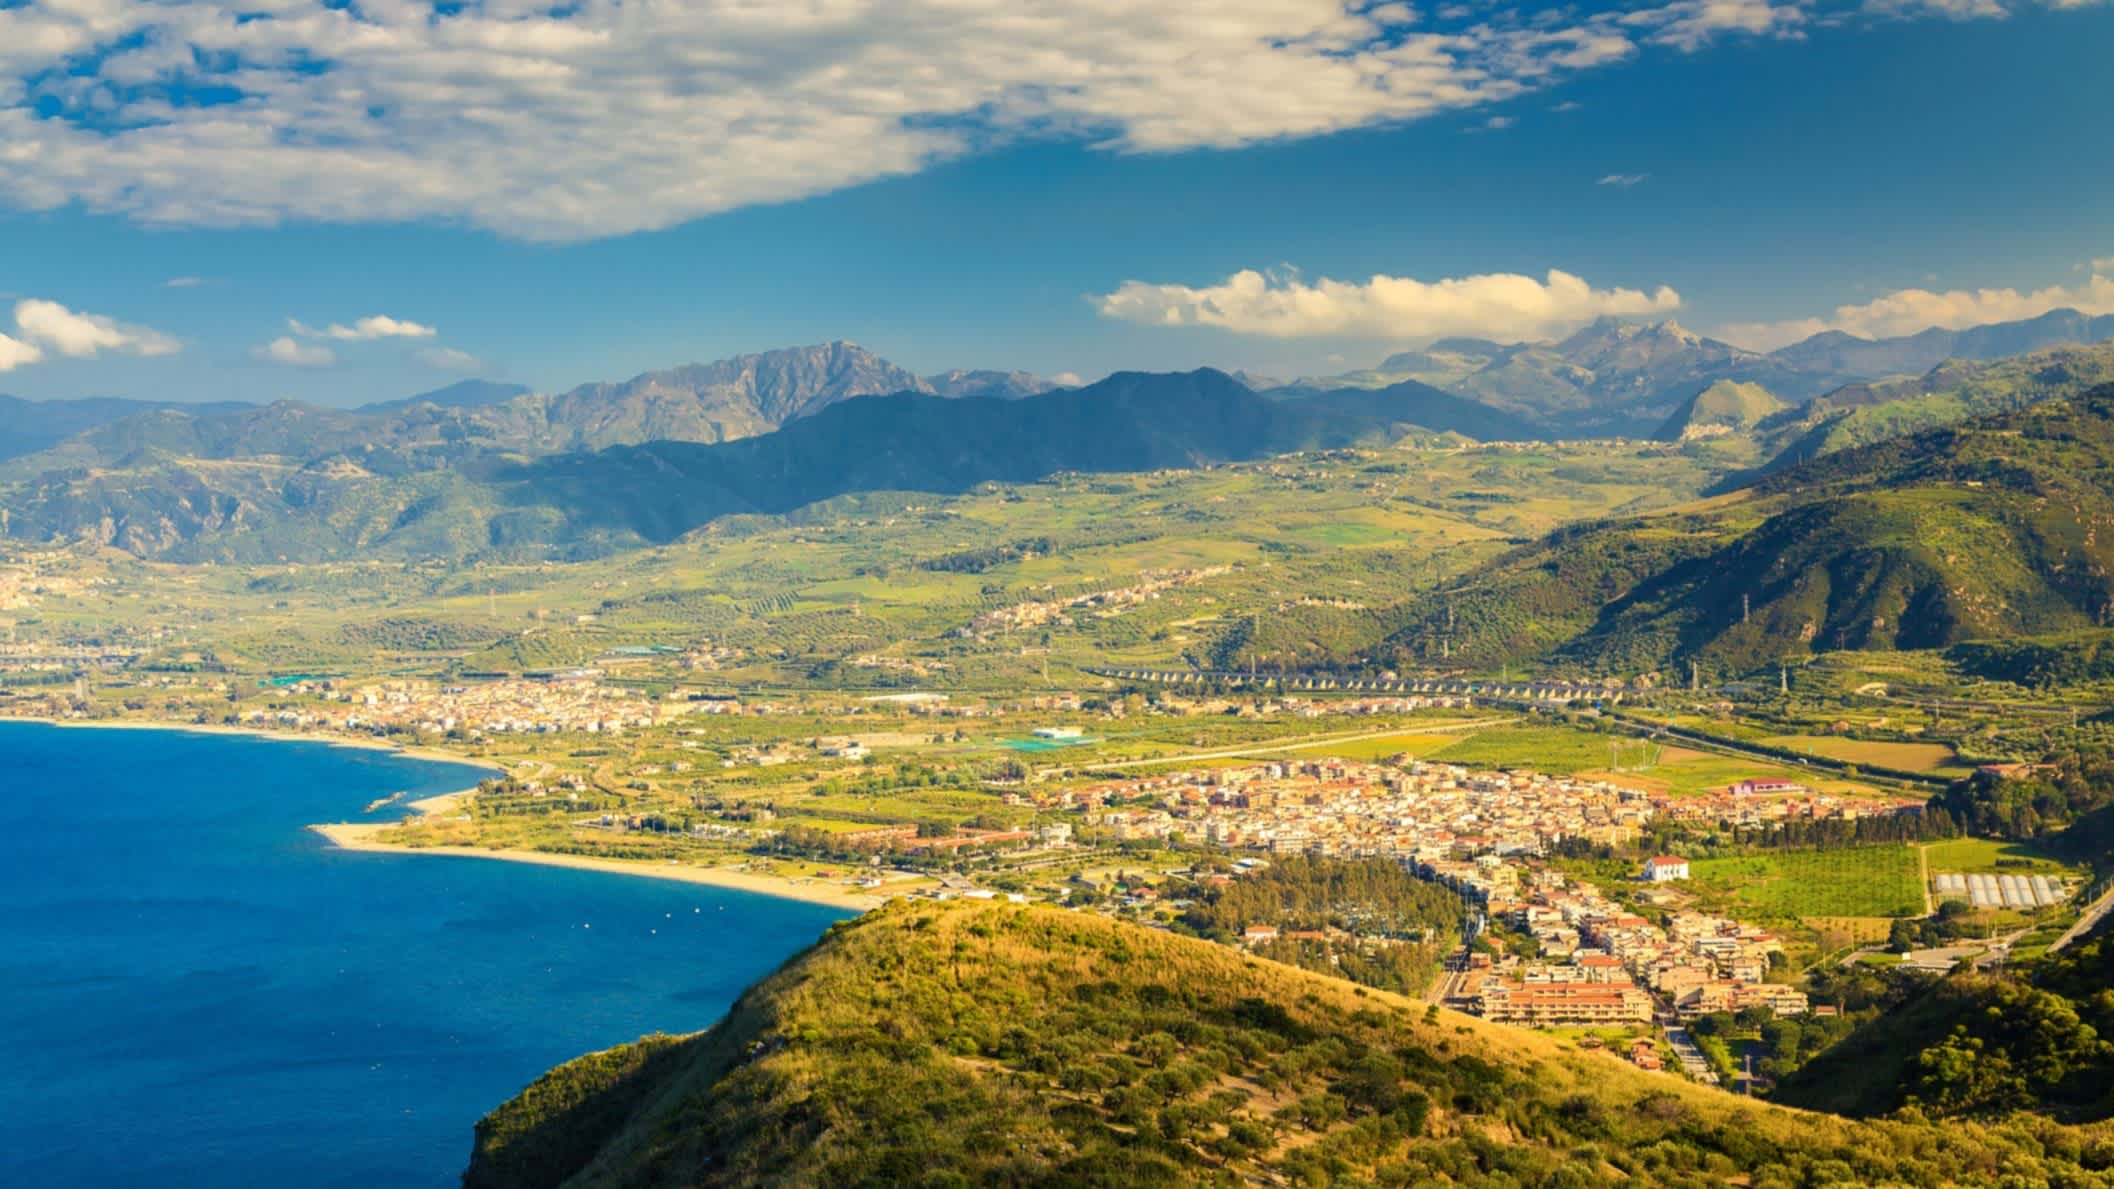 Blick aus der Luft auf eine Stadt und einen Strand in Oliveri  Sizilien, Italien mit Gebirge im Hintergrund.

